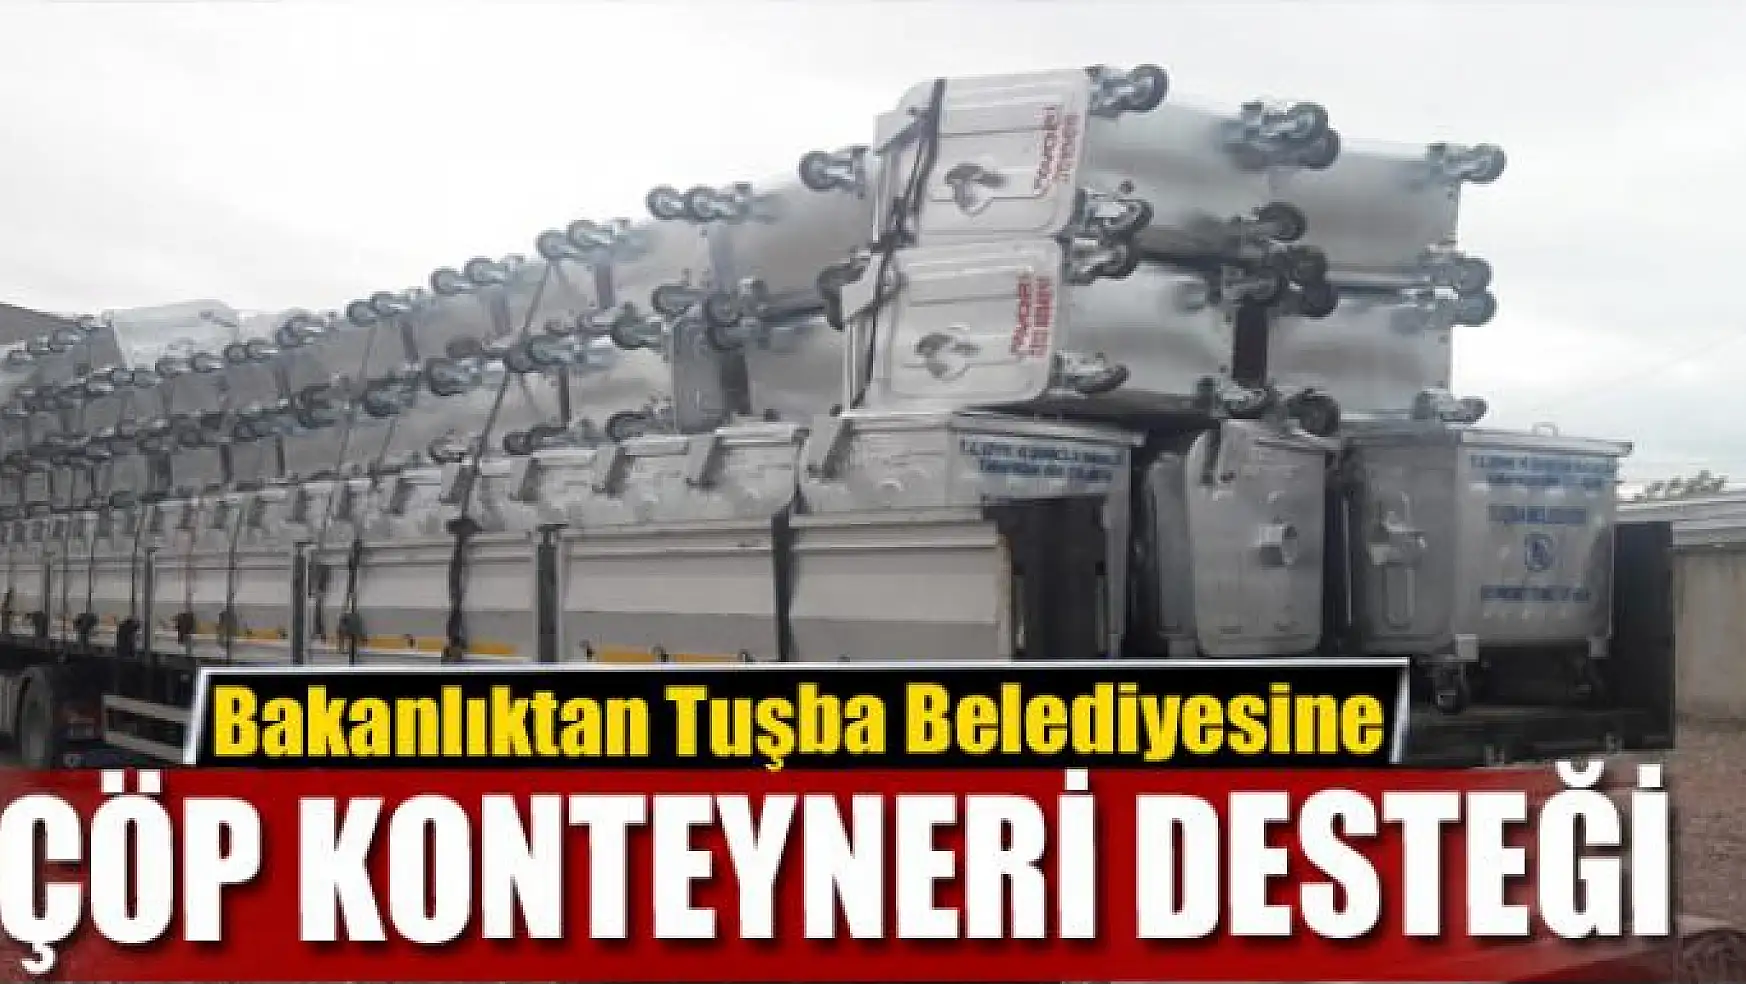 Bakanlıktan Tuşba Belediyesine çöp konteyneri desteği